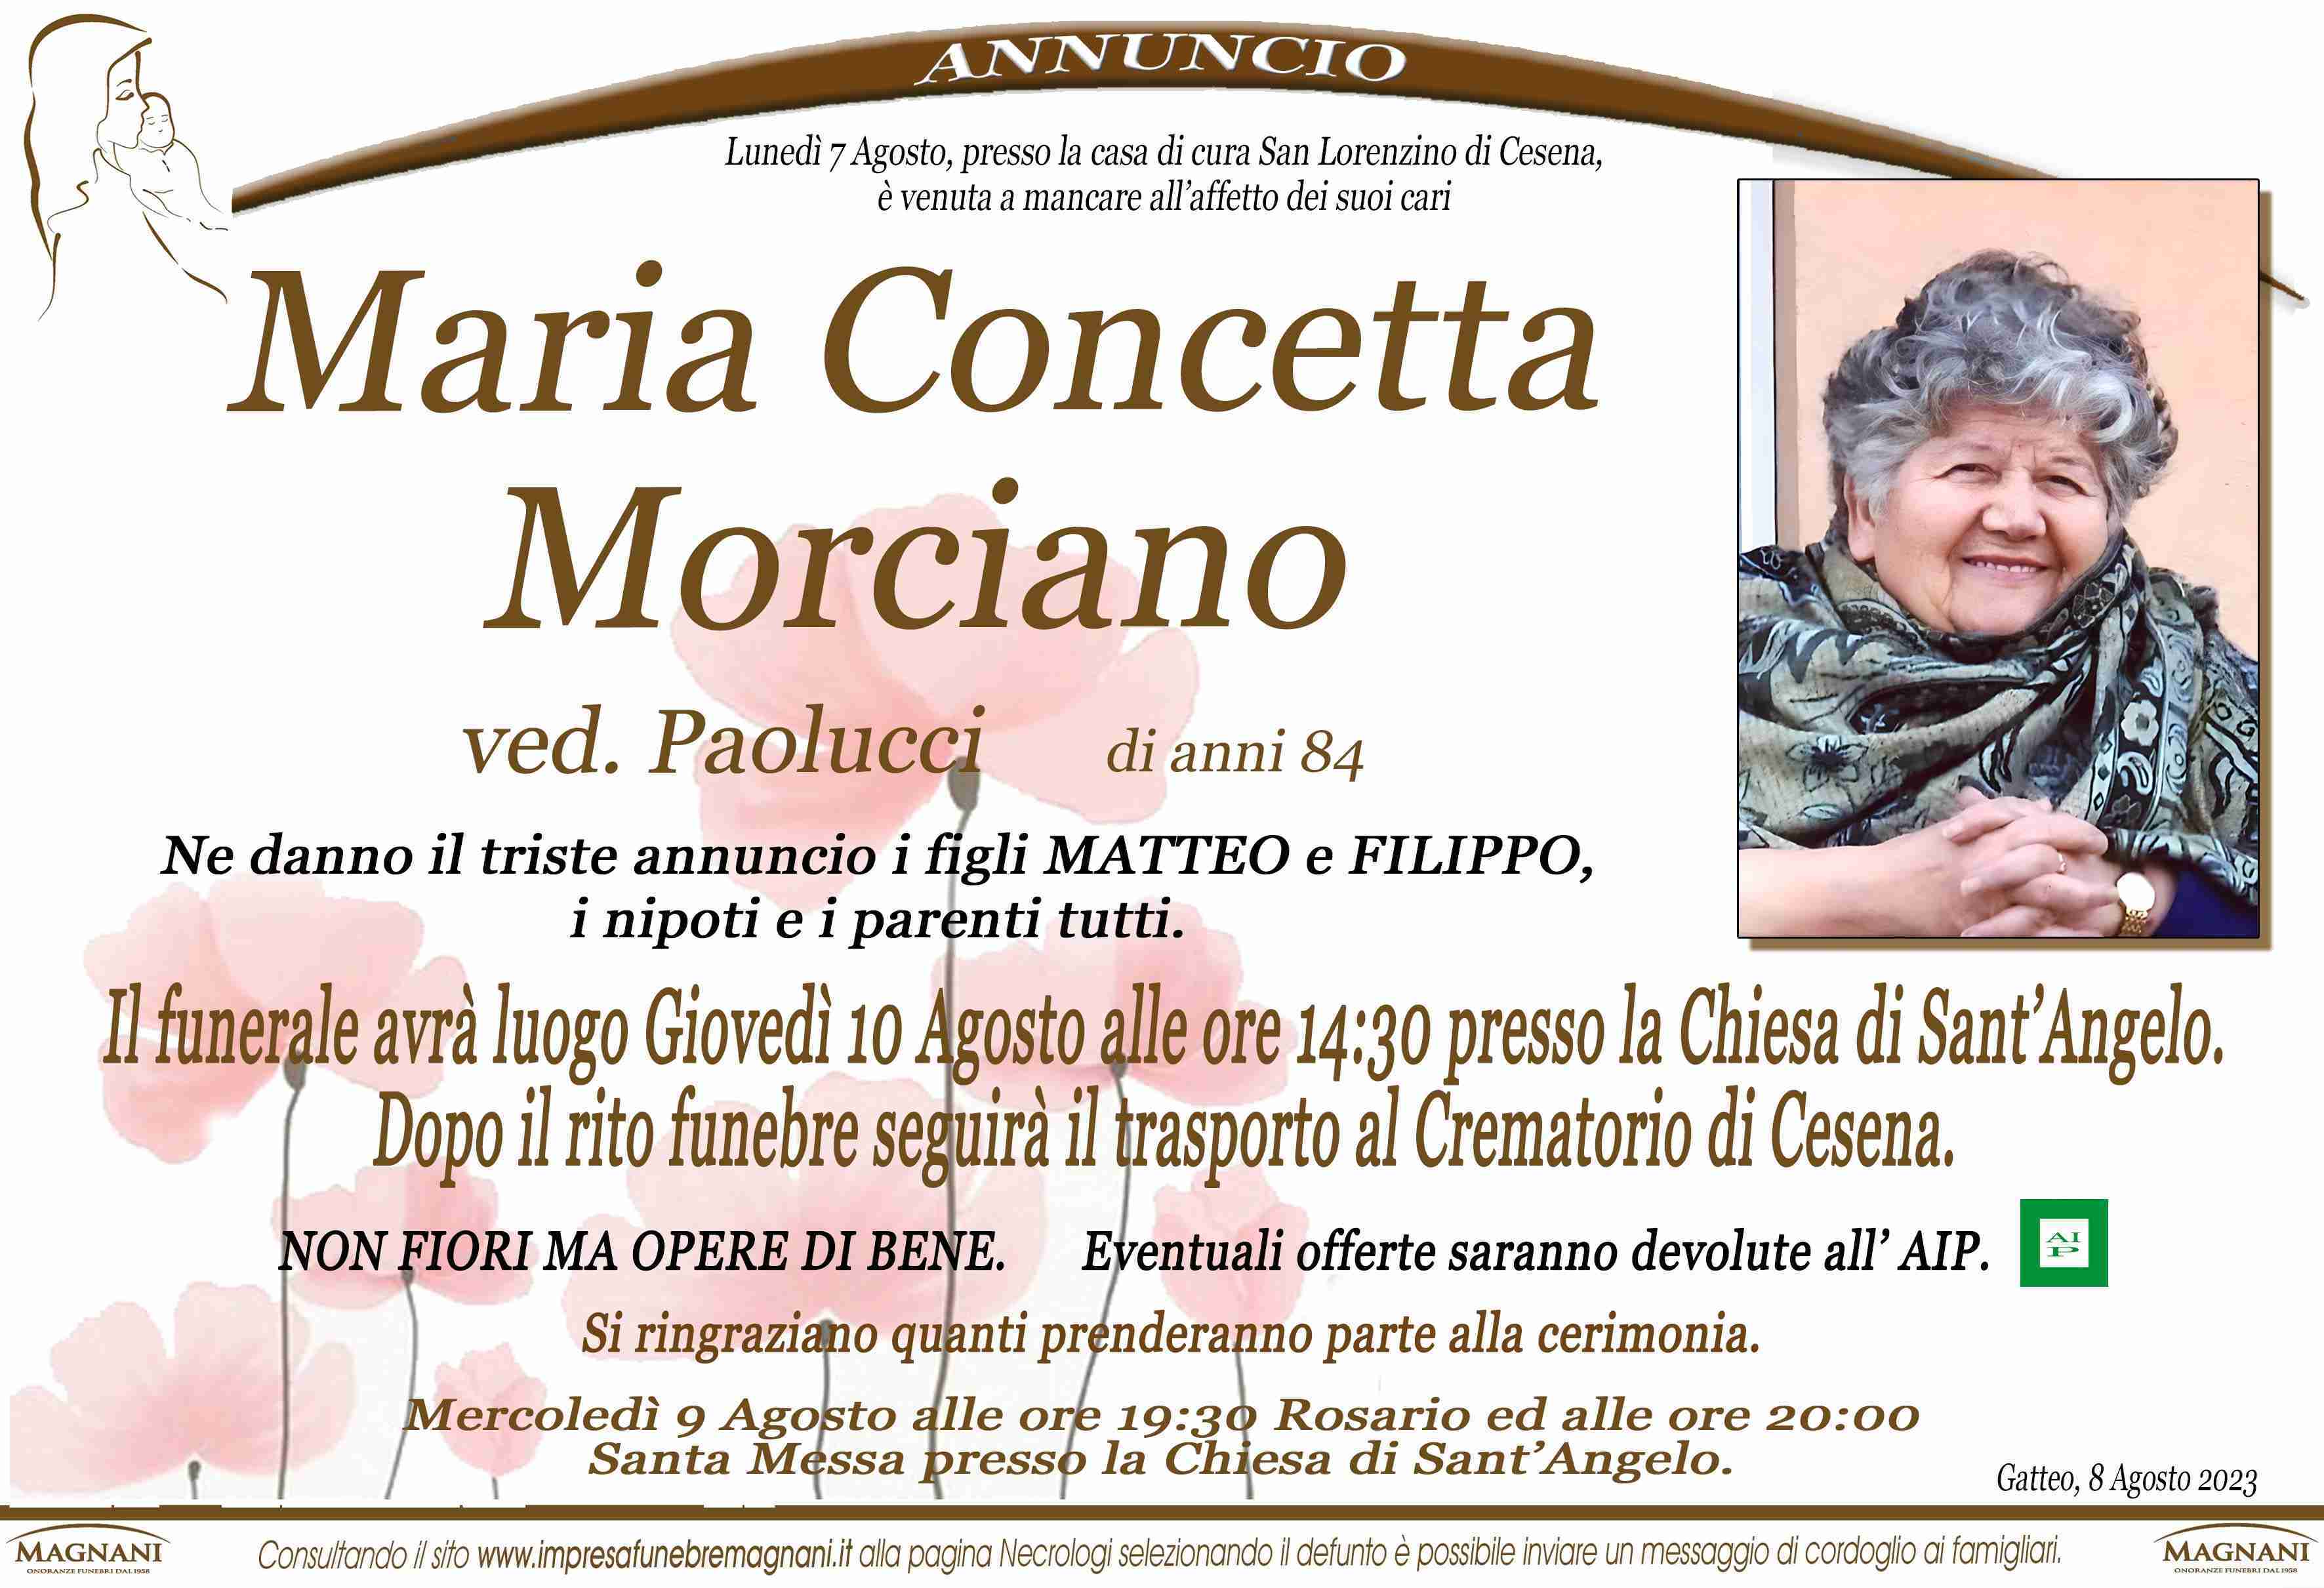 Maria Concetta Morciano